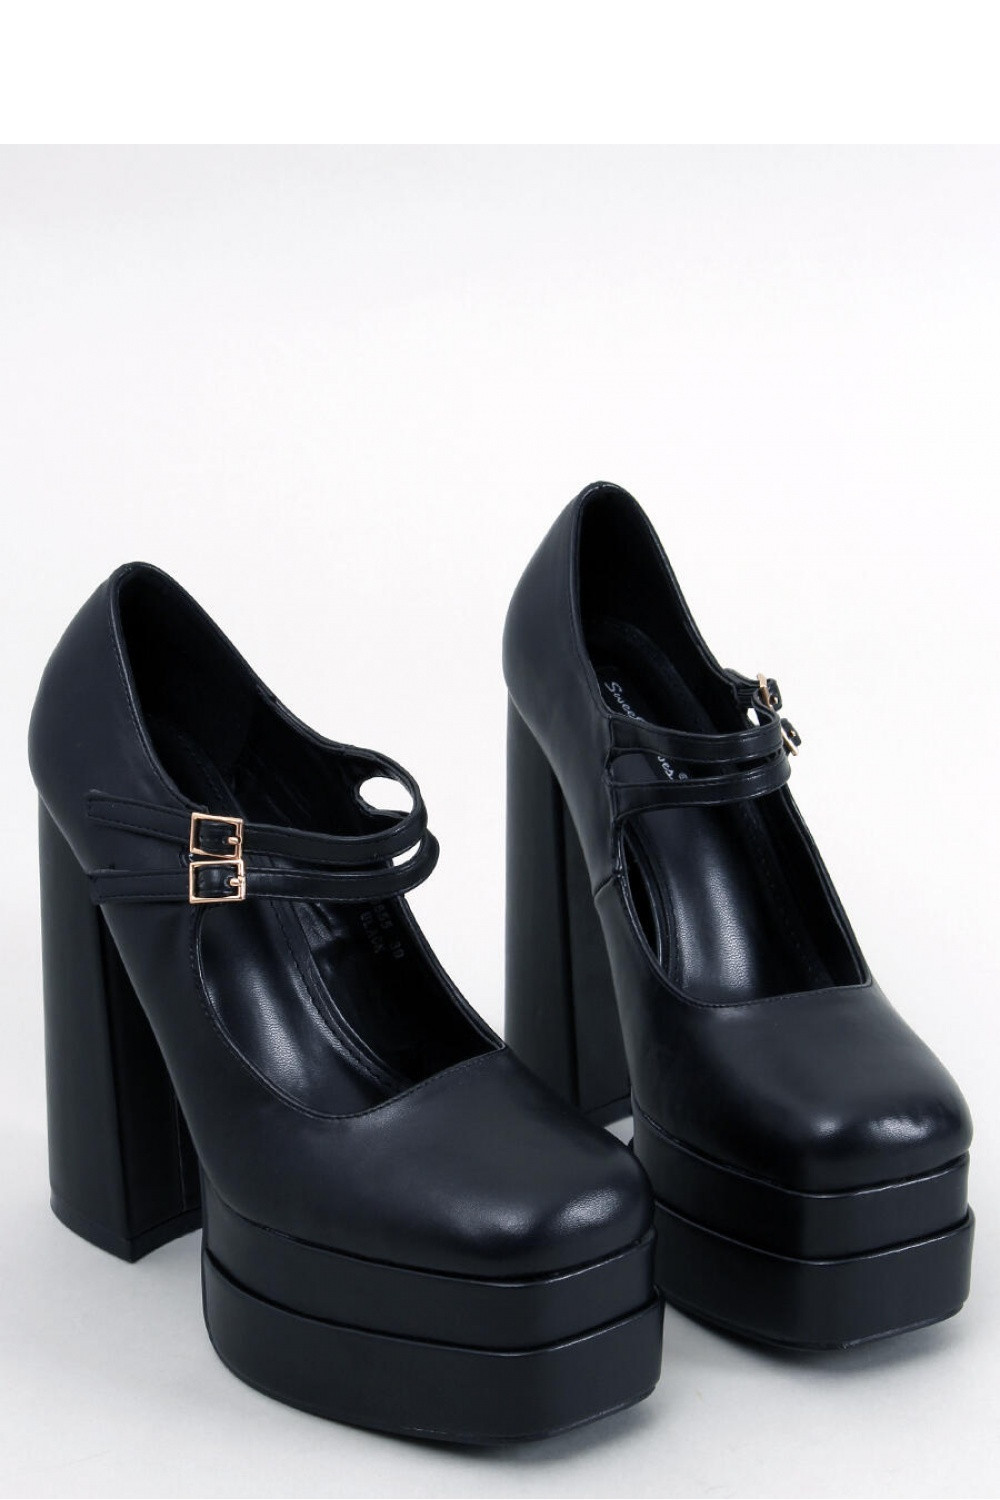 Dámské lodičky na široké platformě se černá Sweet Shoes model 18539898 - Inello Velikost: 40, Barvy: černá